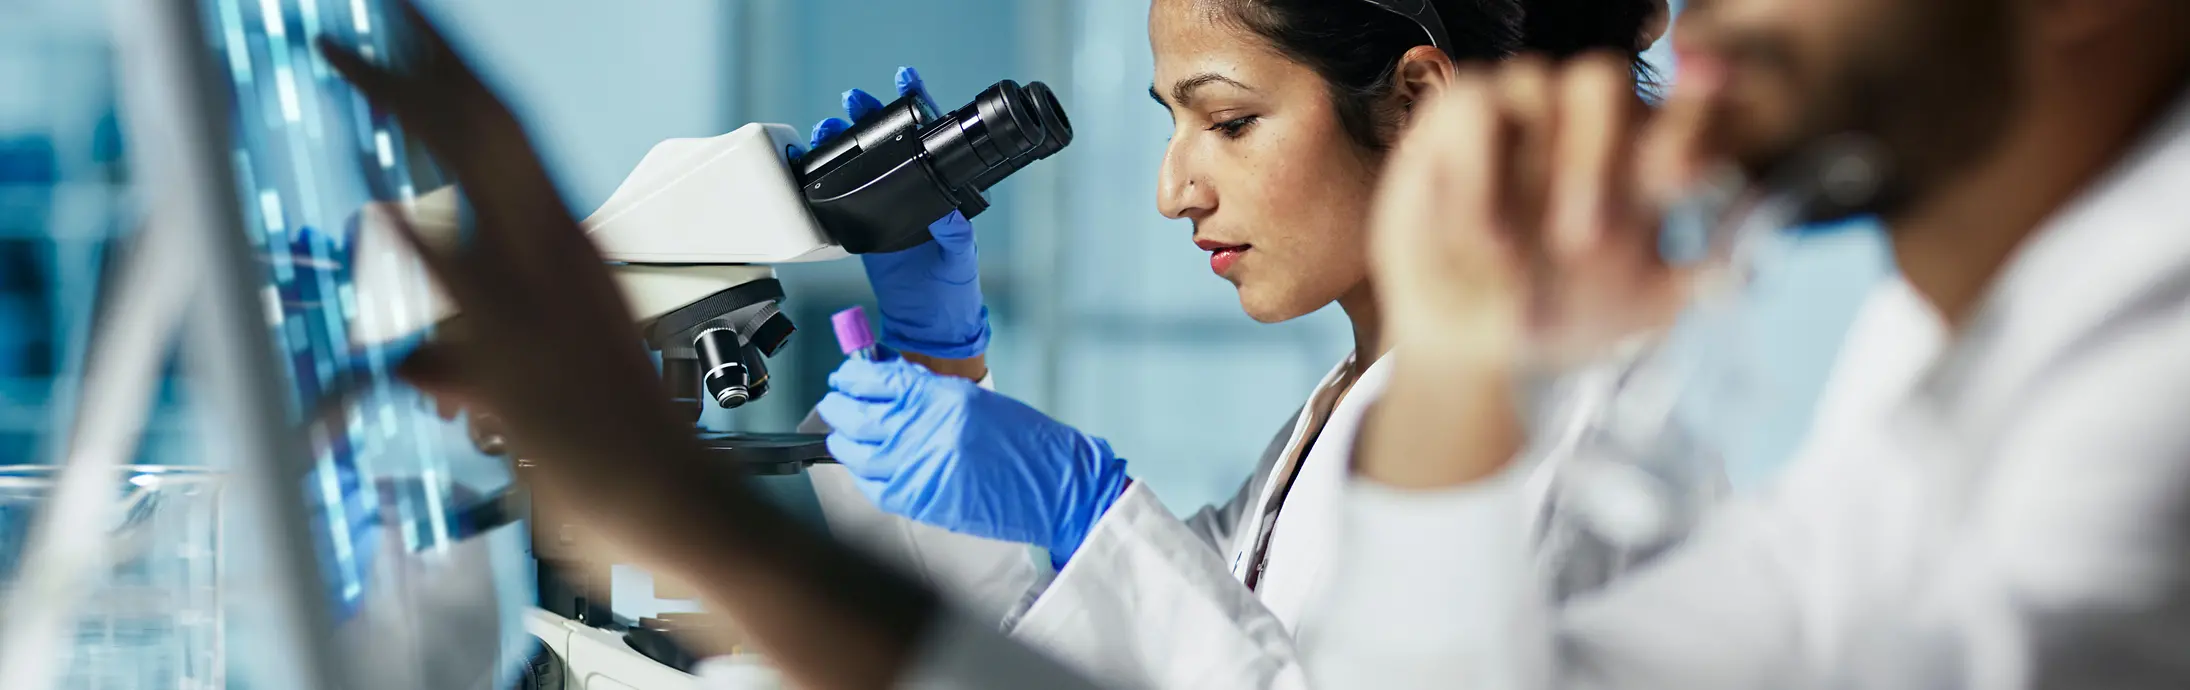 Un laboratorio con una mujer sentada delante de un microscopio, mirando una muestra y en frente un hombre con barba observando una pantalla. 